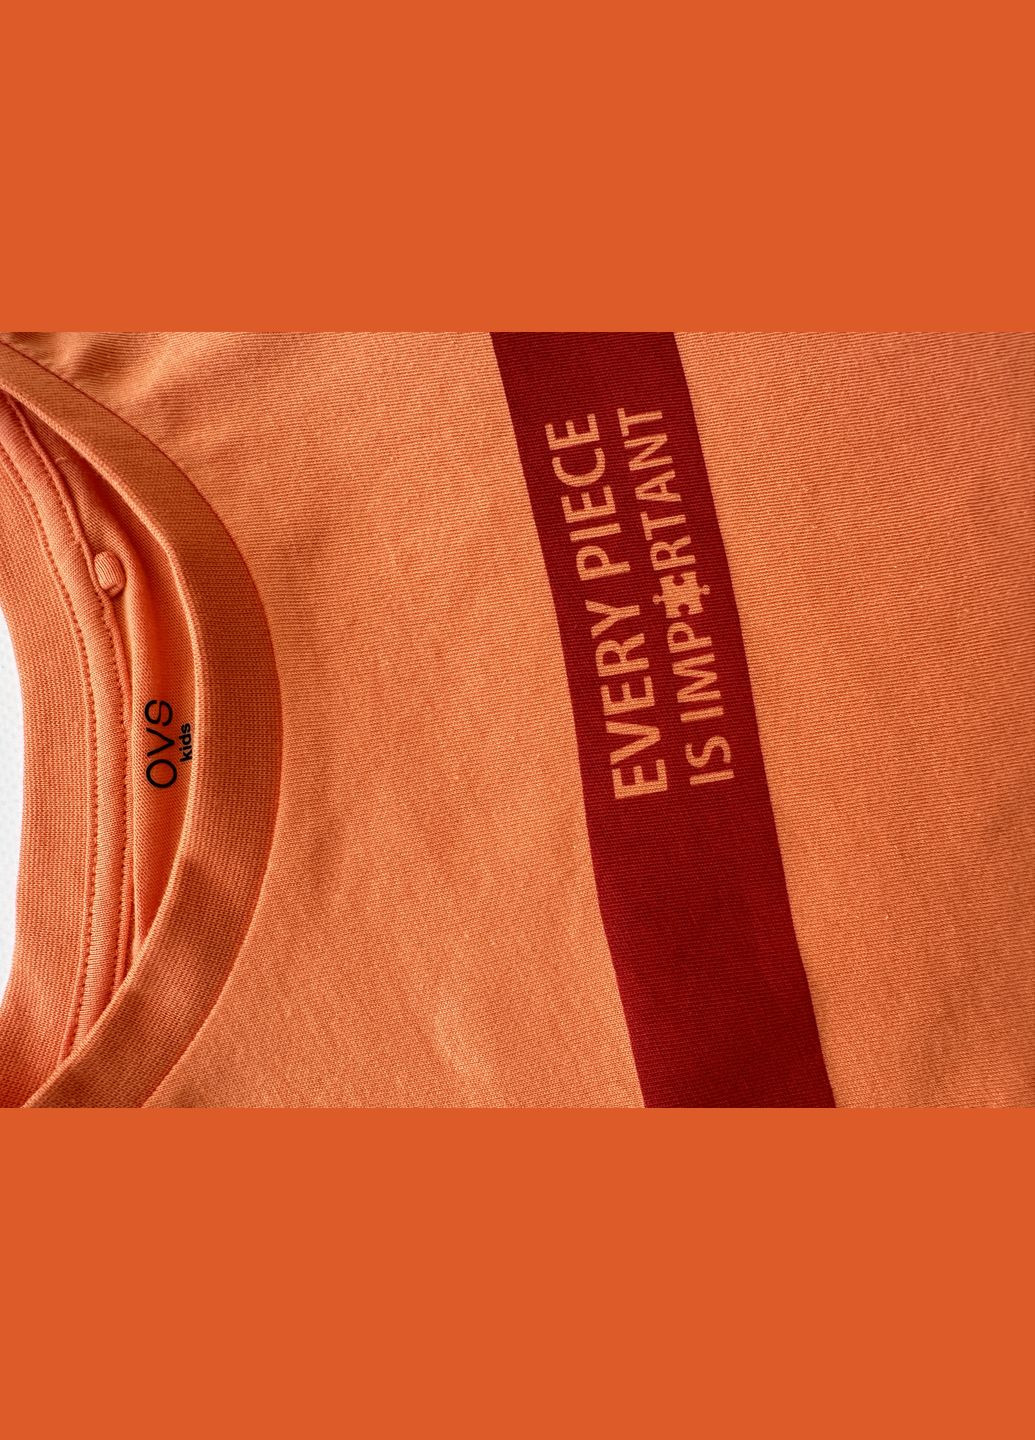 Оранжевая летняя комплект (2шт) футболки для парня оранжевая + красная 2000-23/2000-24 (122 см) OVS